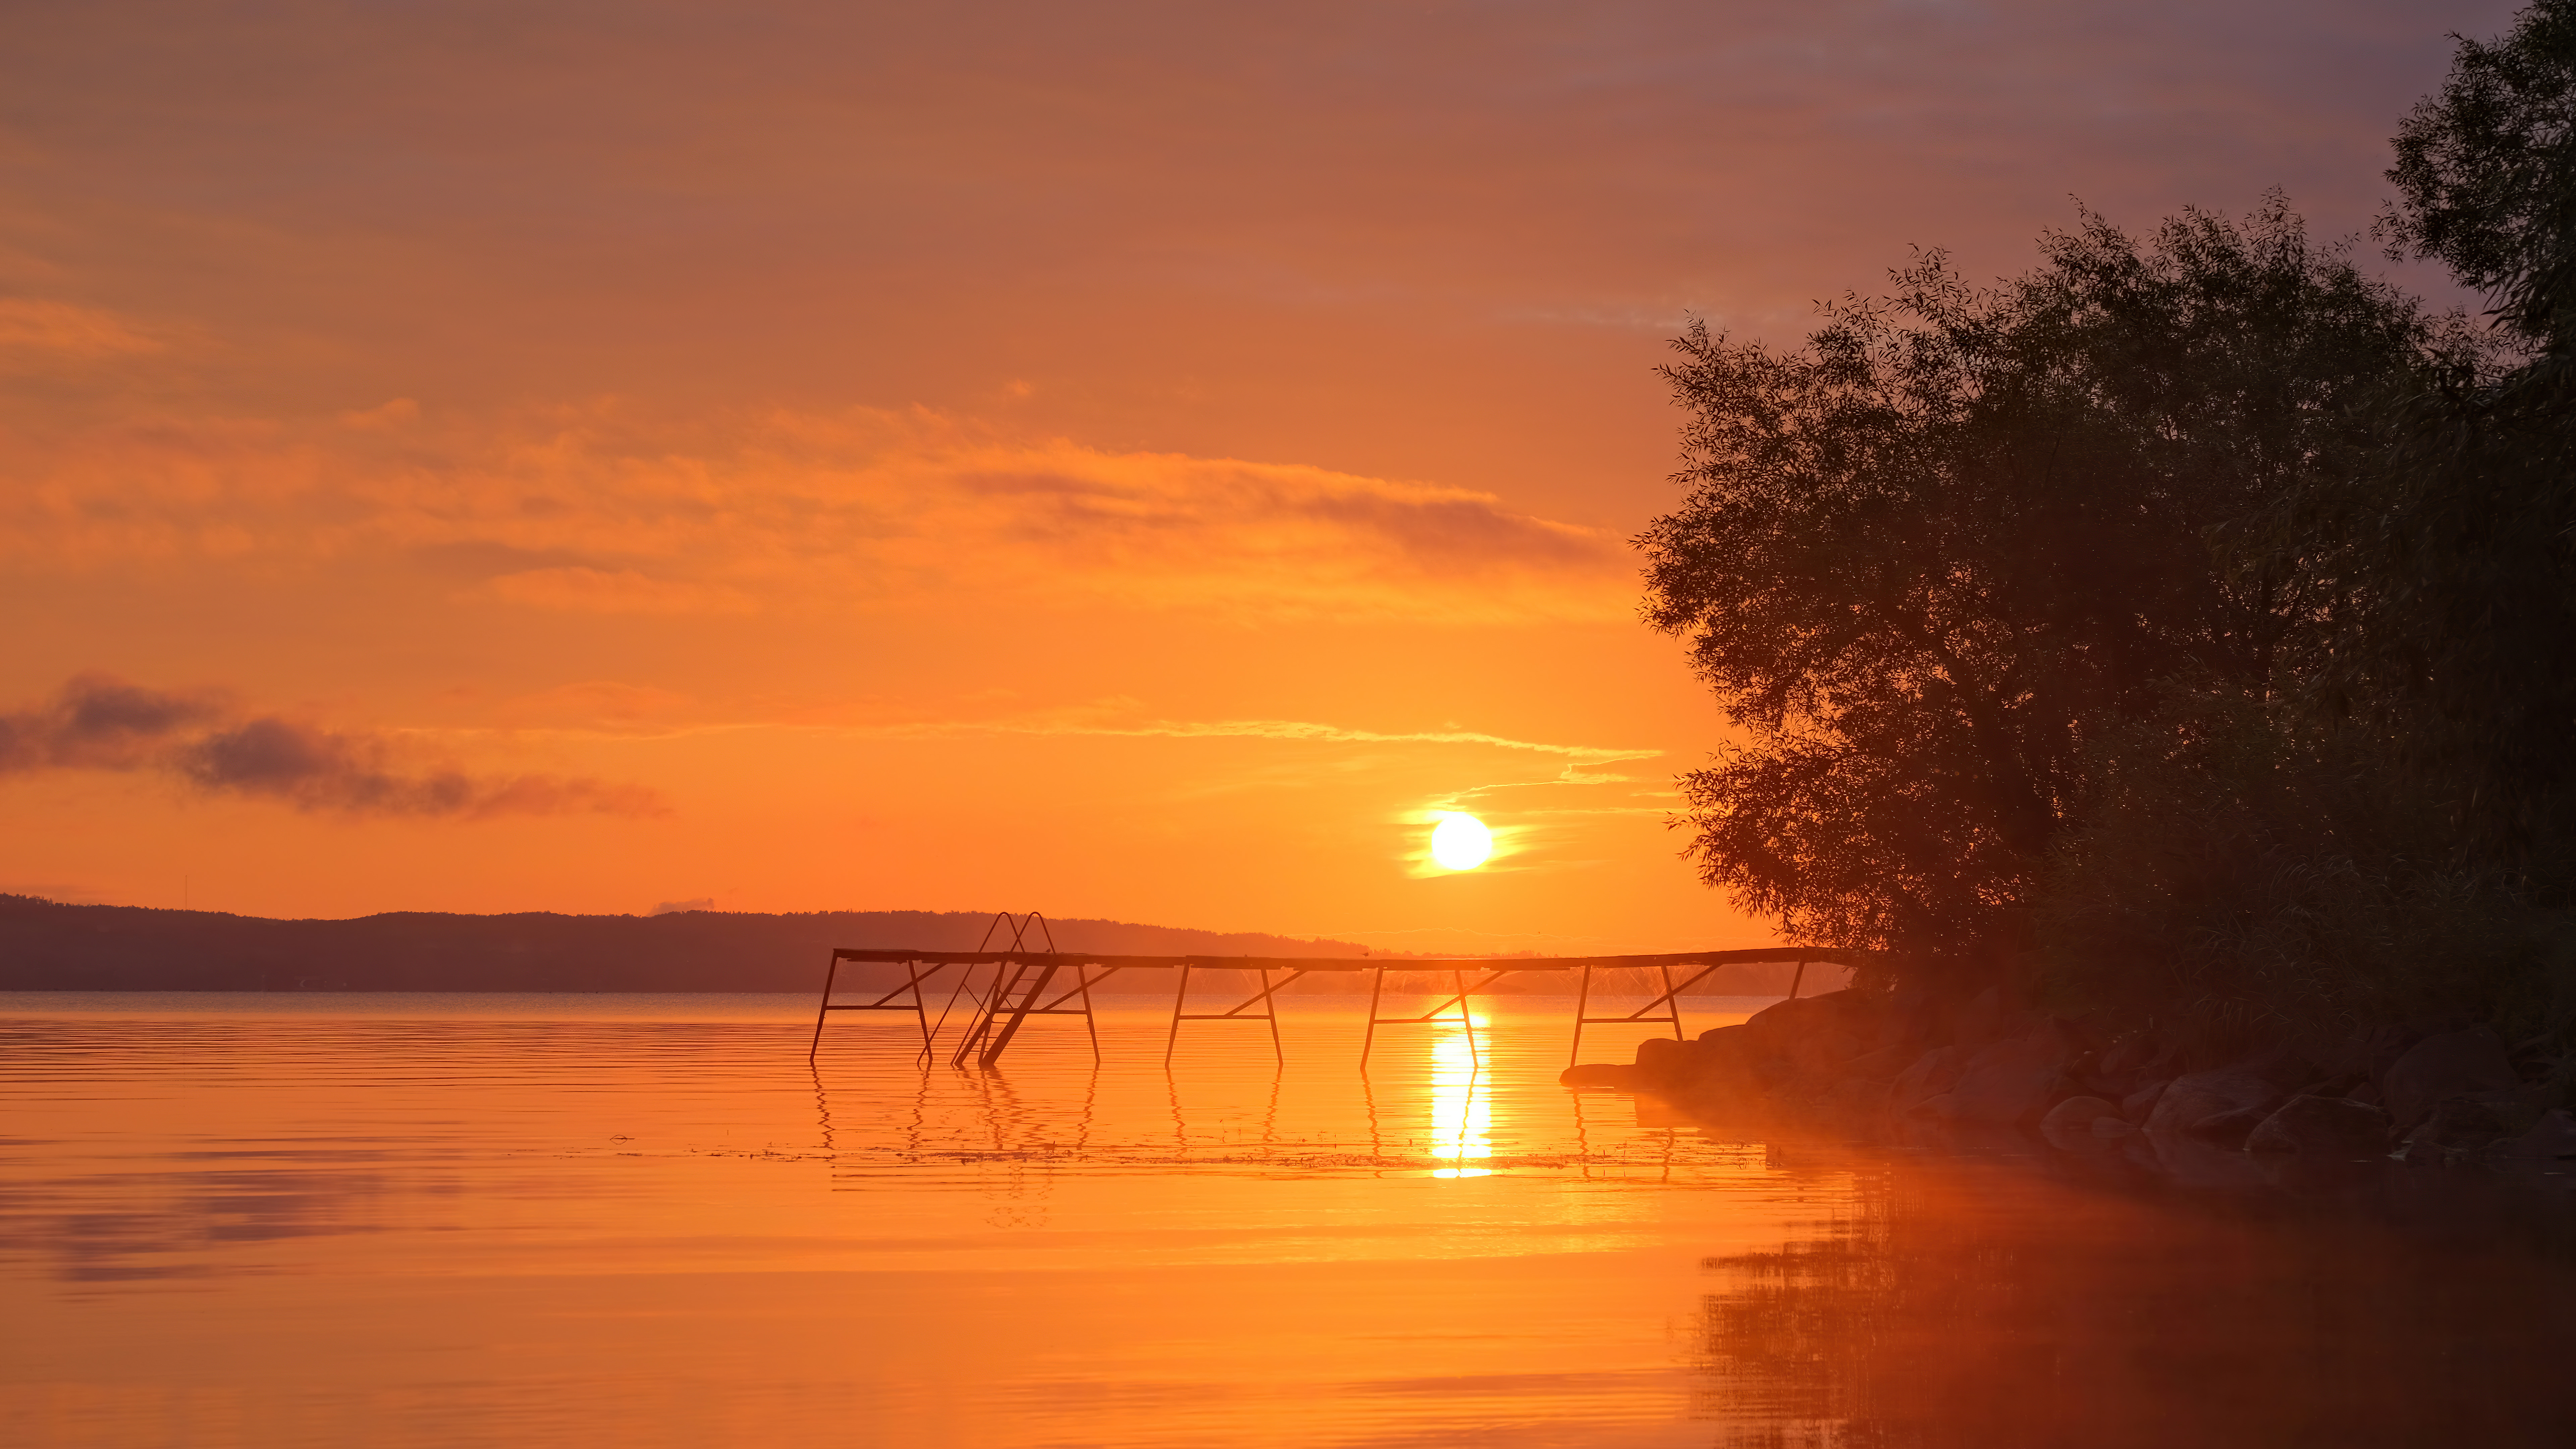 lakeside-orange-sunset-8k-of.jpg